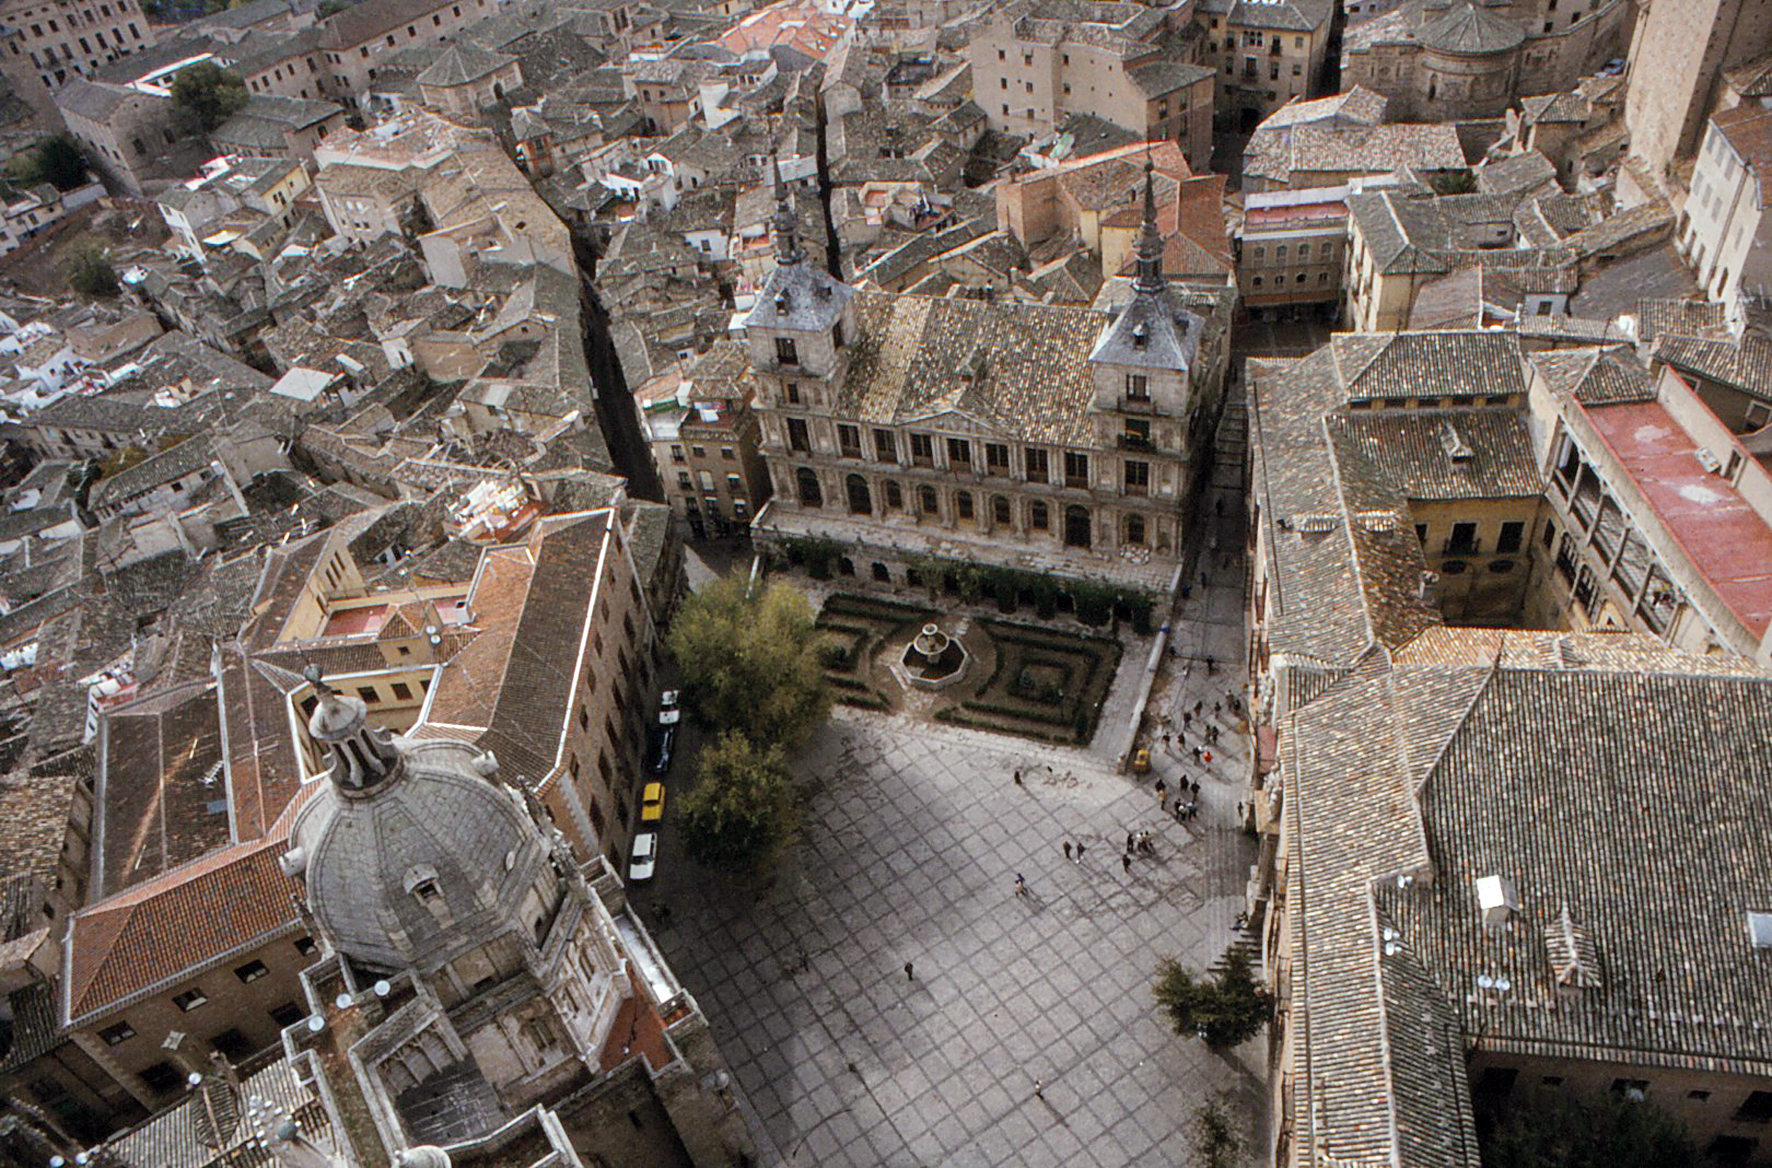 Plaza del ayuntamiento de la ciudad de Toledo, del archivo de Rufino Miranda.